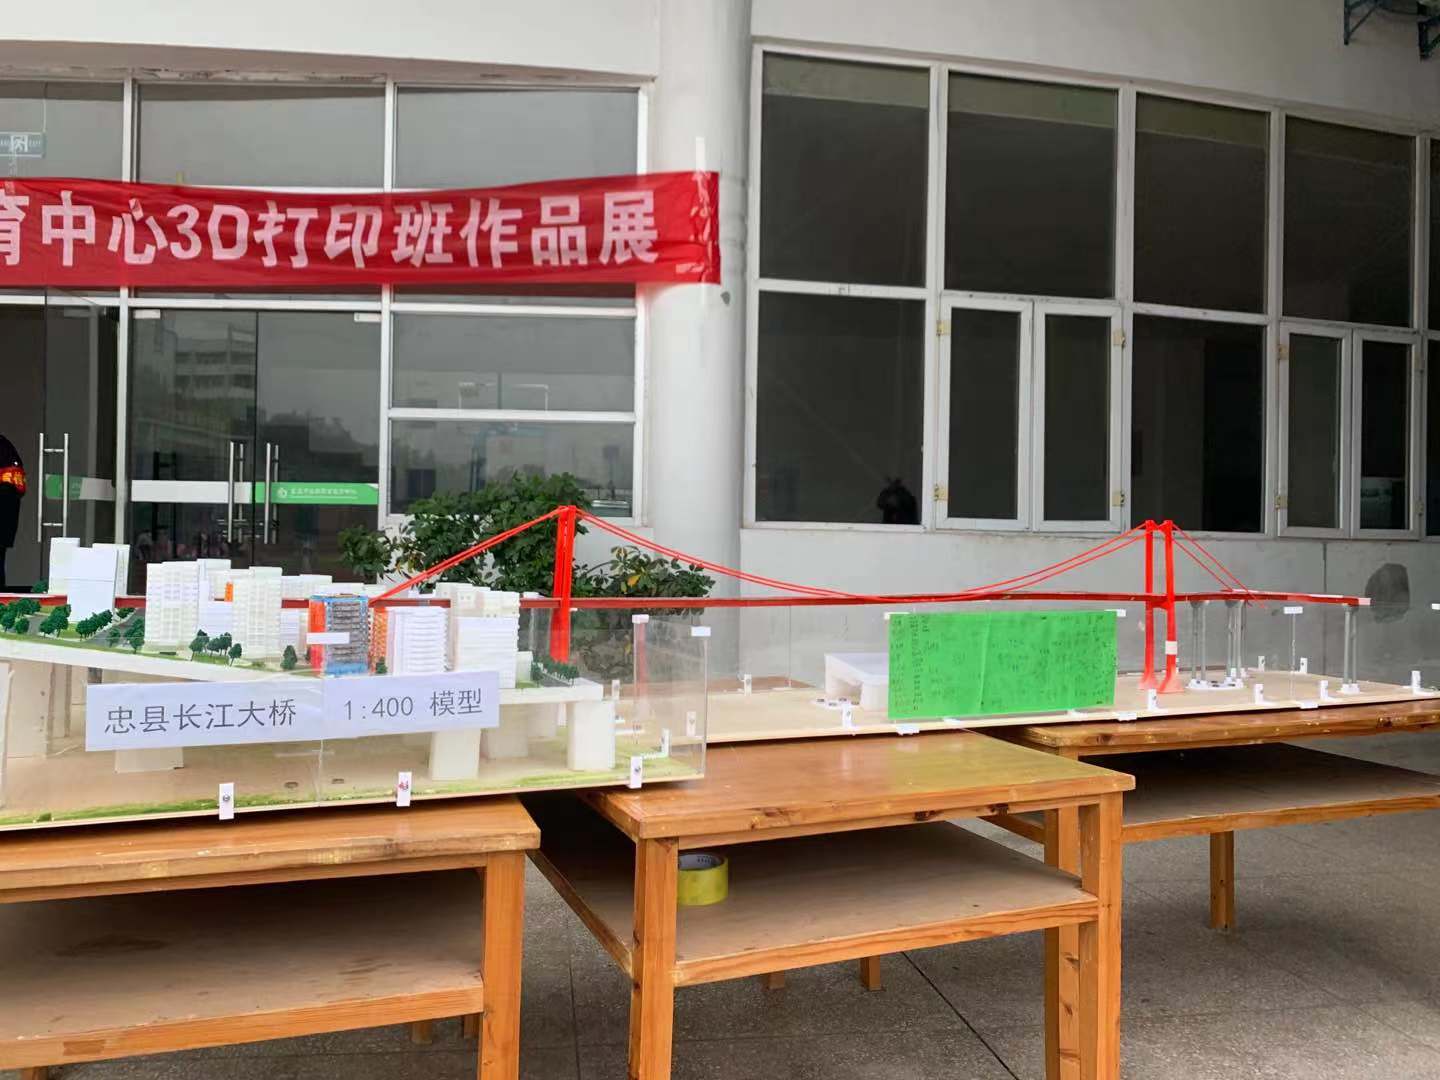 忠县职教中心2020秋季学期3D打印班活动如期举行